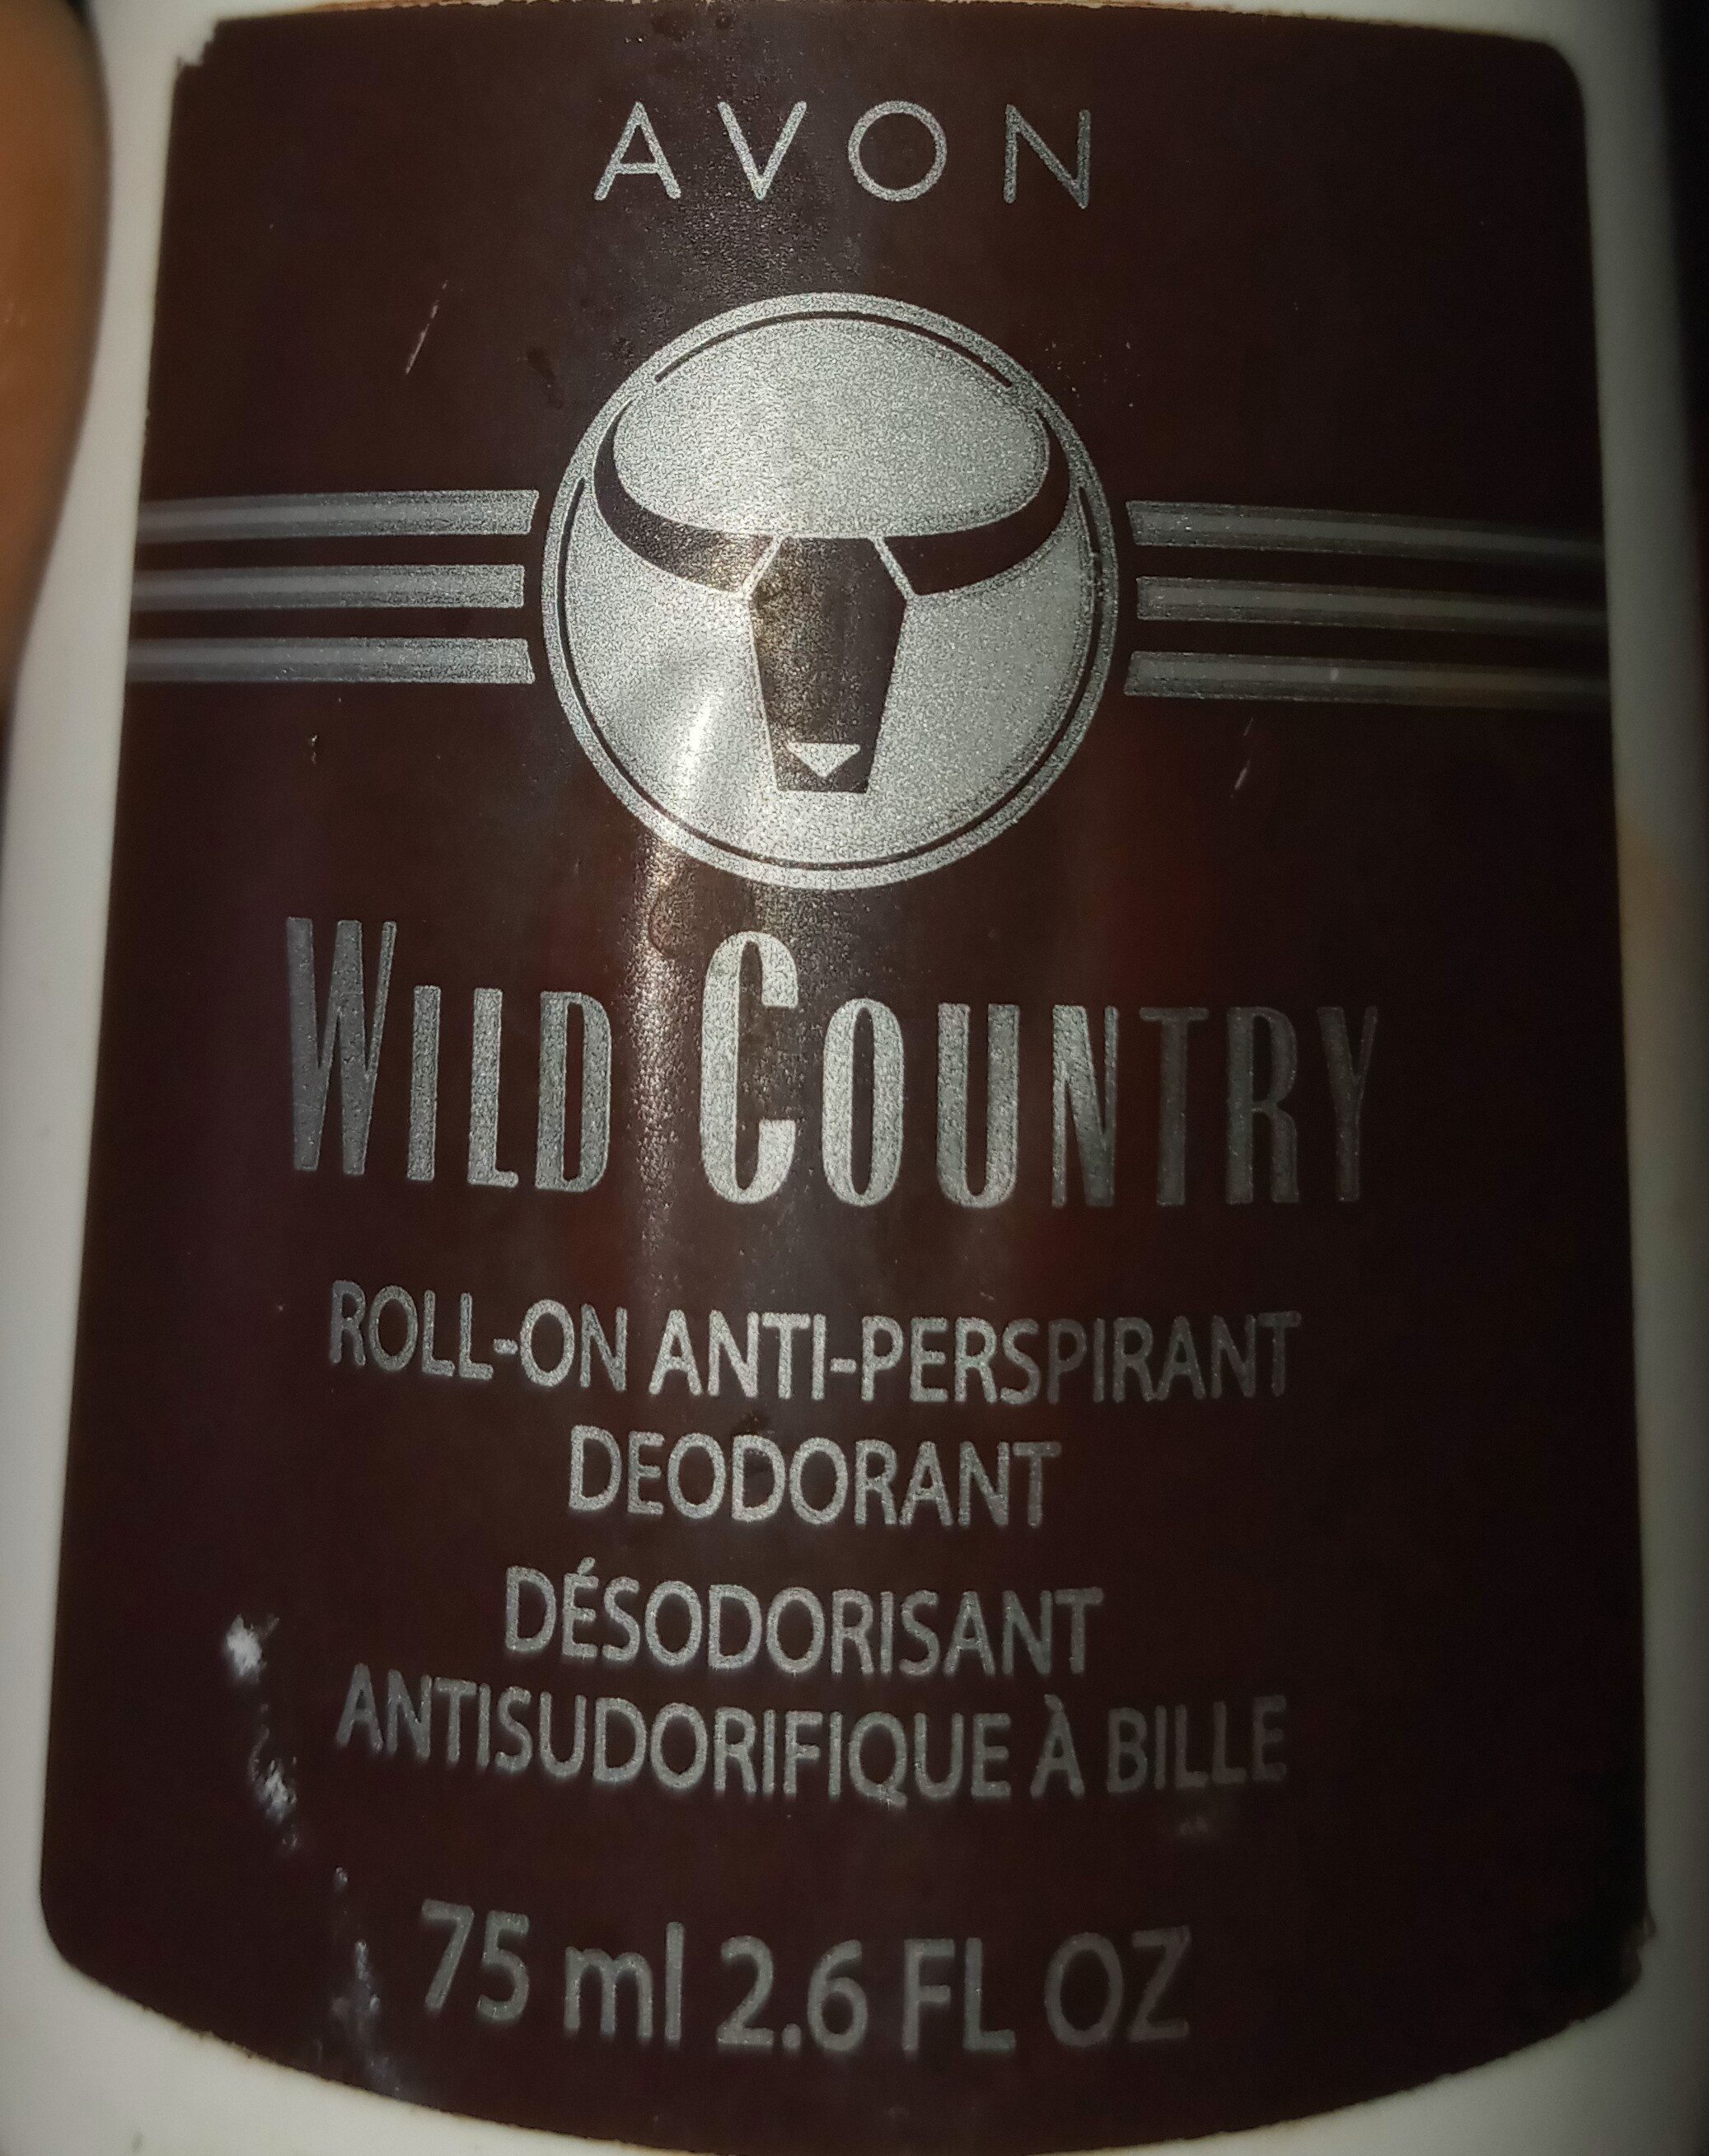 Wild country, roll-on deodorant - Ingredients - en